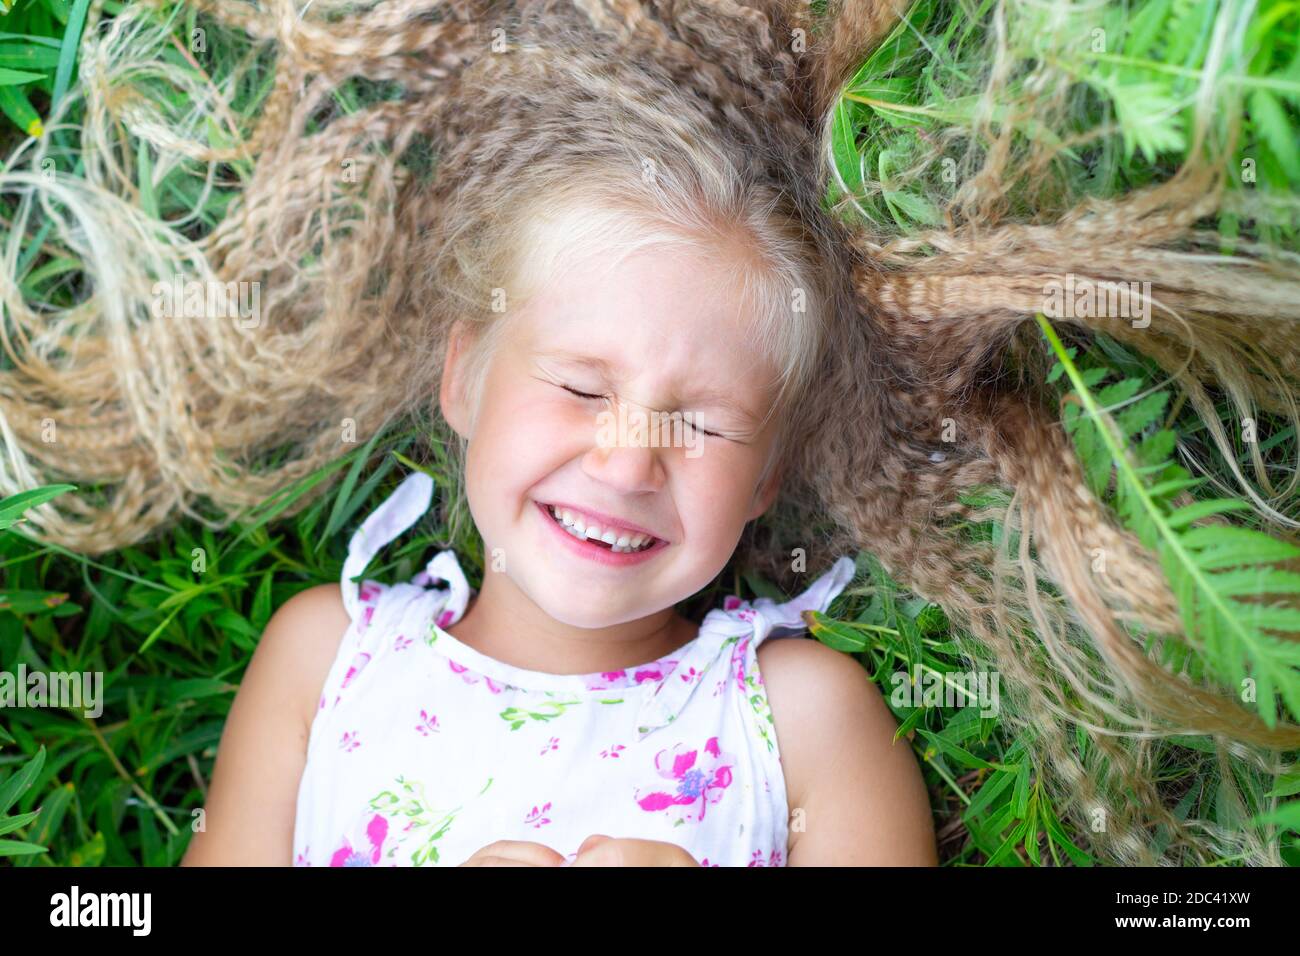 Ein kleines kaukasisches Mädchen mit langen blonden Haaren in einer weißen Sundress liegt auf ihrem Rücken im Gras, schloss die Augen, lächelt, lacht. Kindheit, Glück, Stockfoto